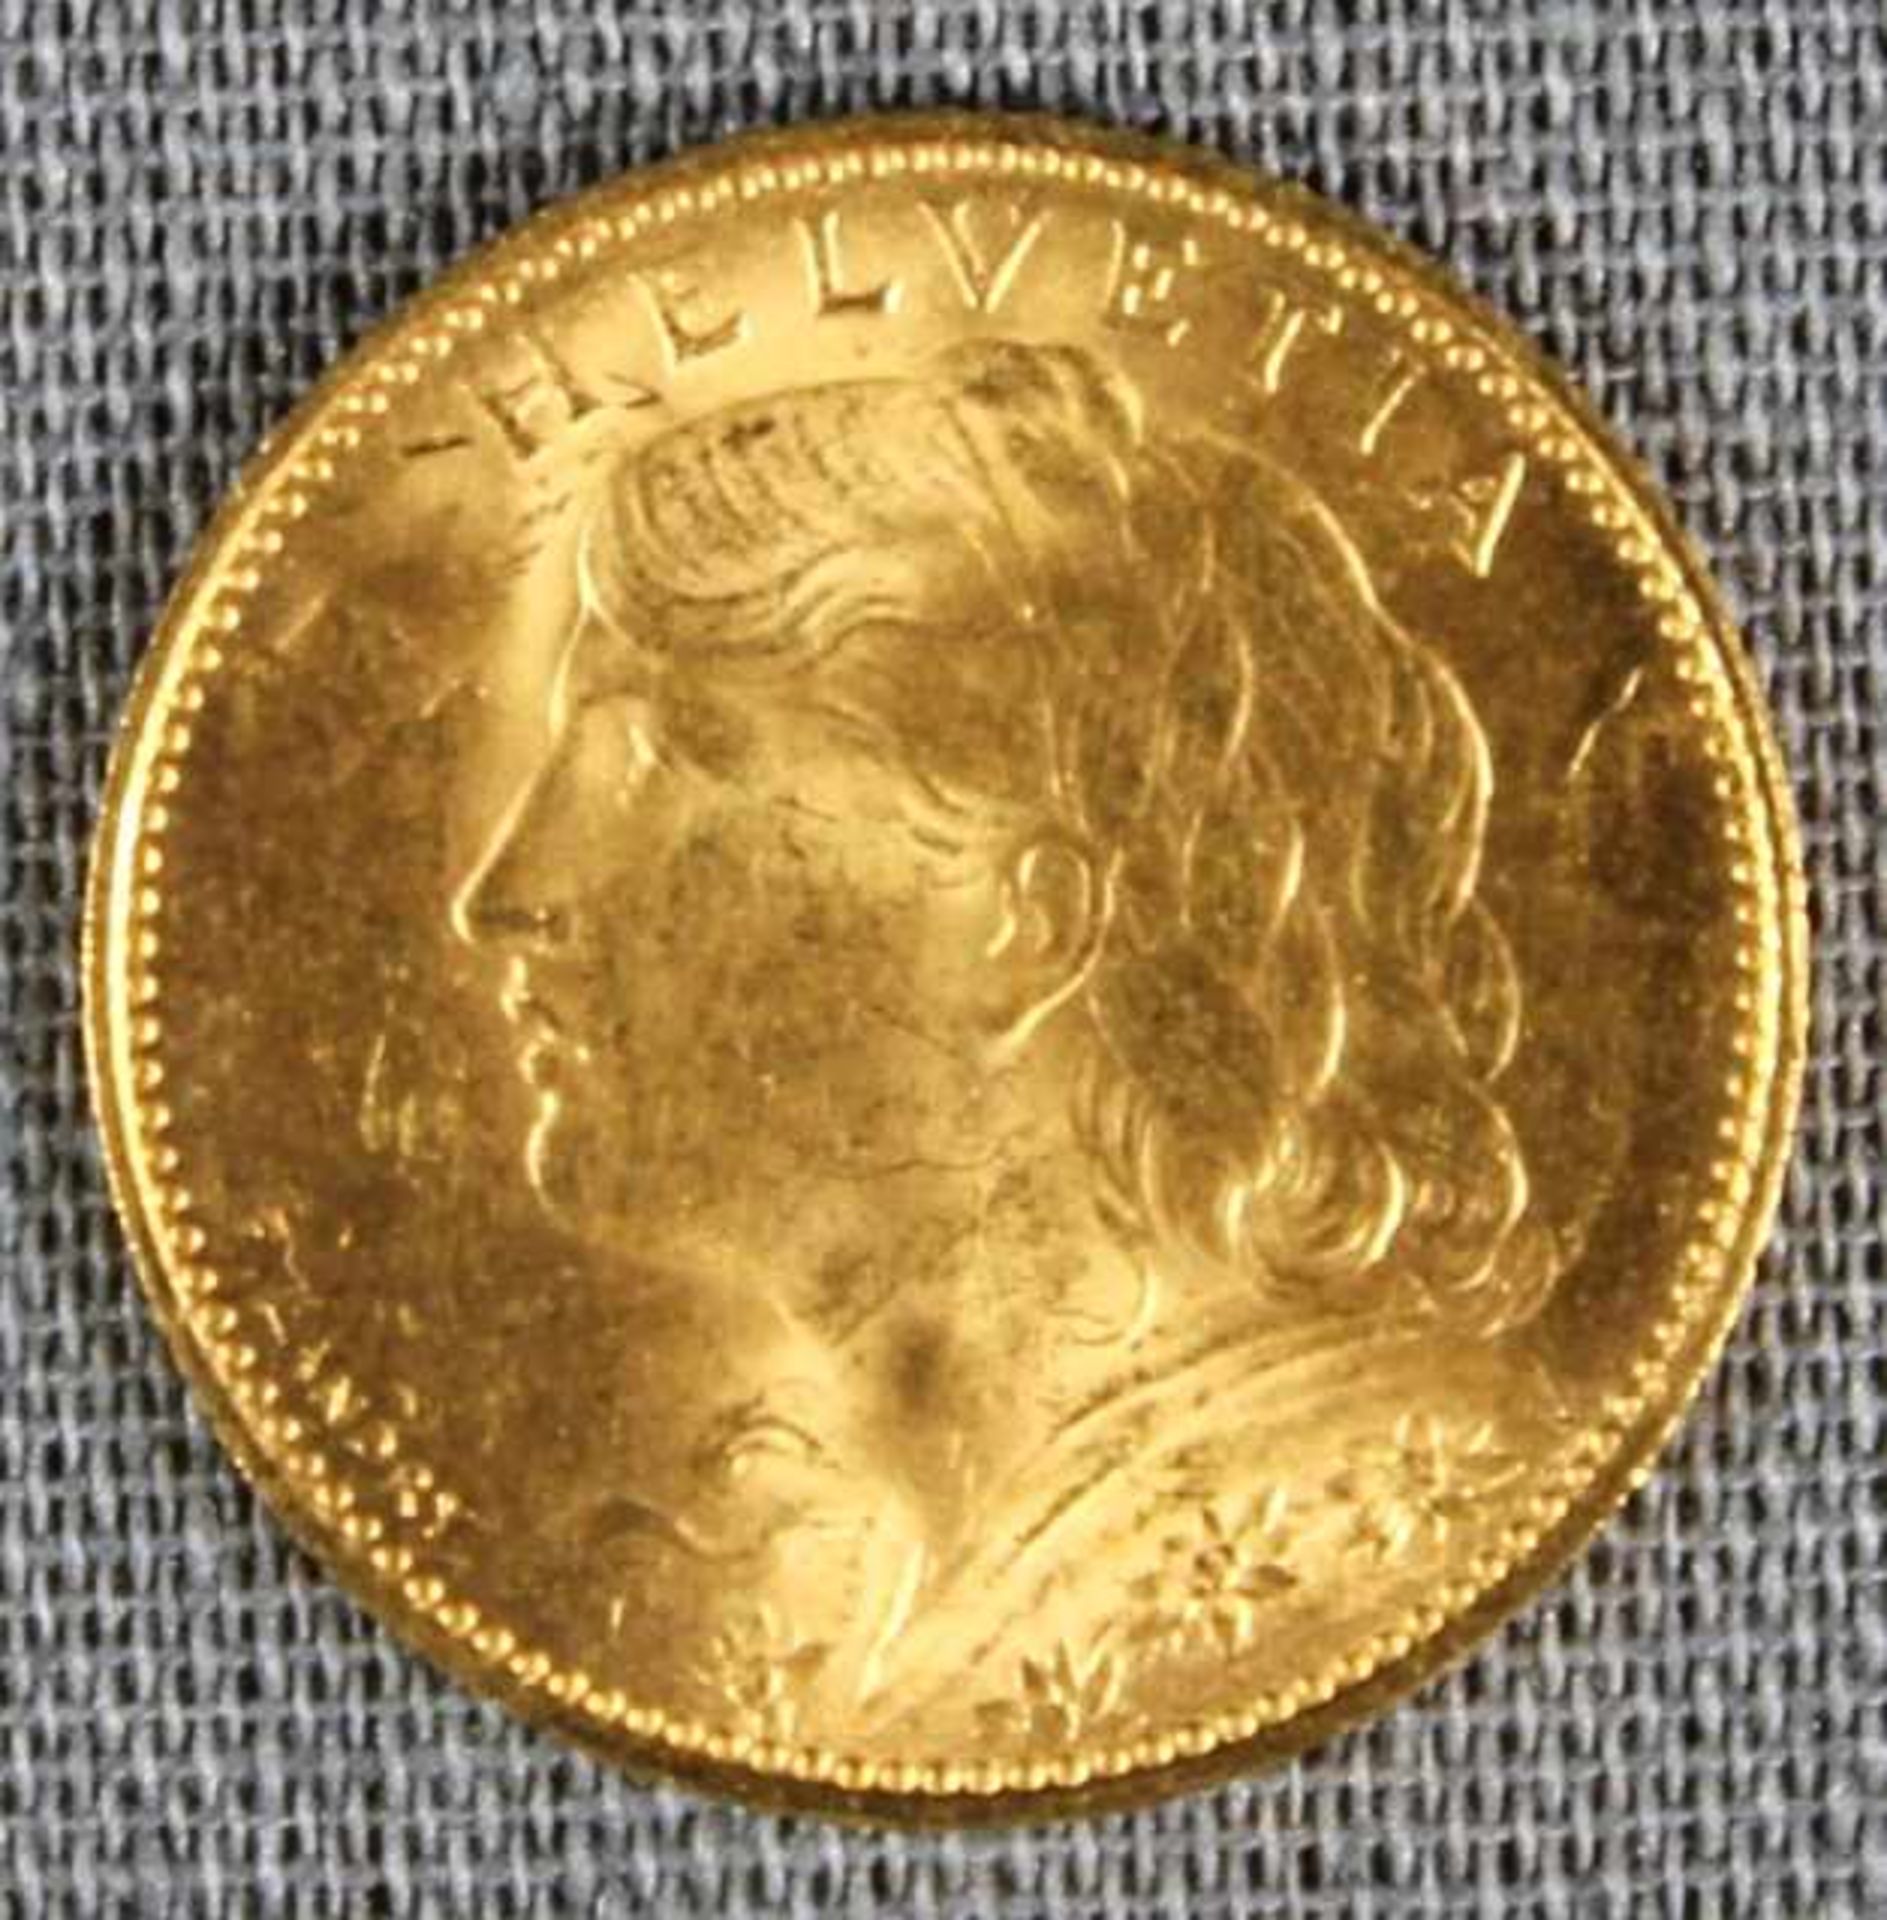 1 kleine Goldmünze (900/000) "10 Francs/Vreneli 1922", 3,22g, Feingewicht 2,90g, D 19mm, sehr schöne